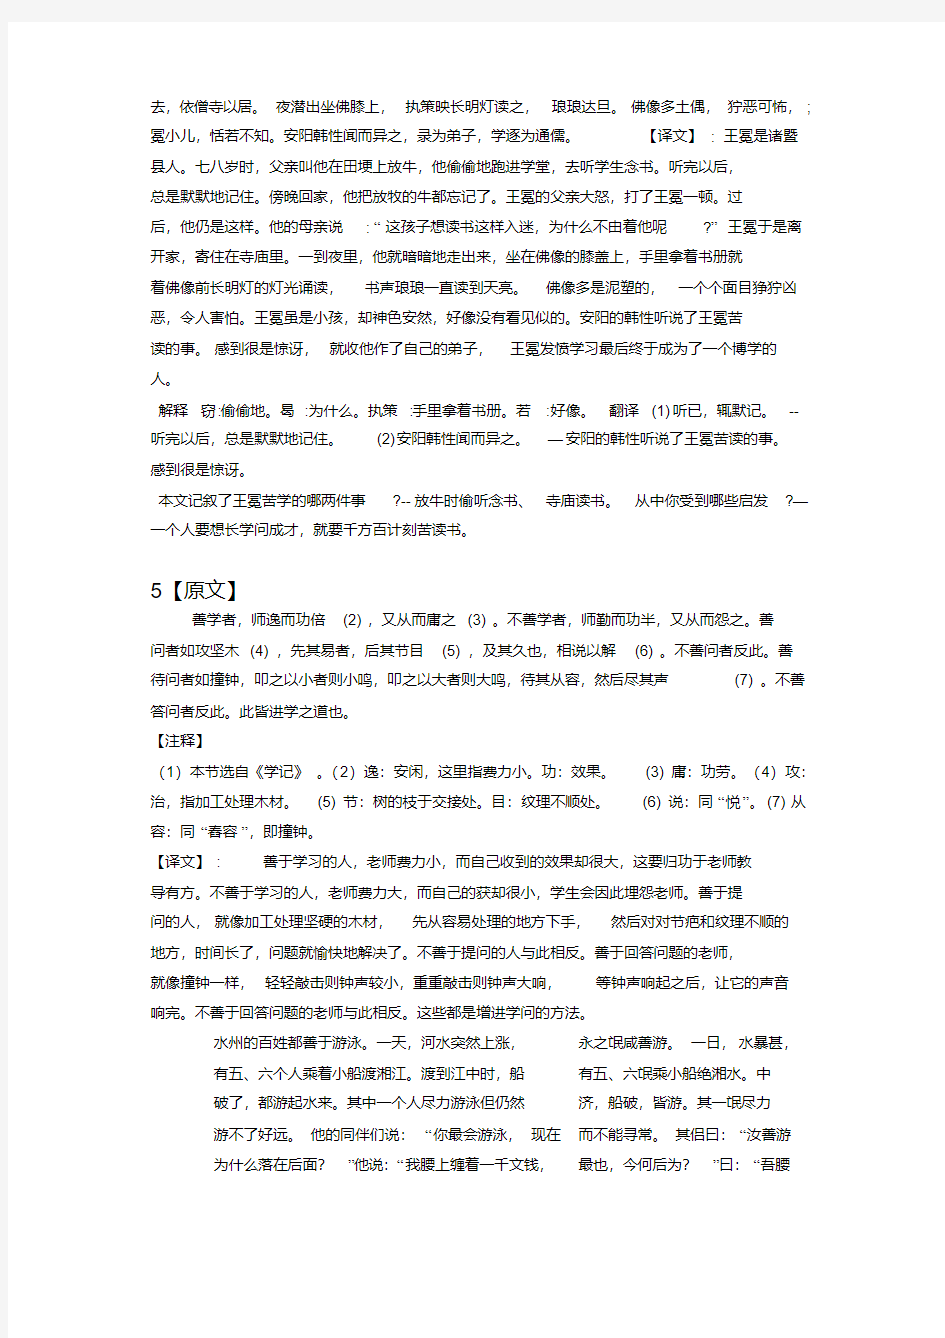 人教版初中语文七年级课本古文翻译整理